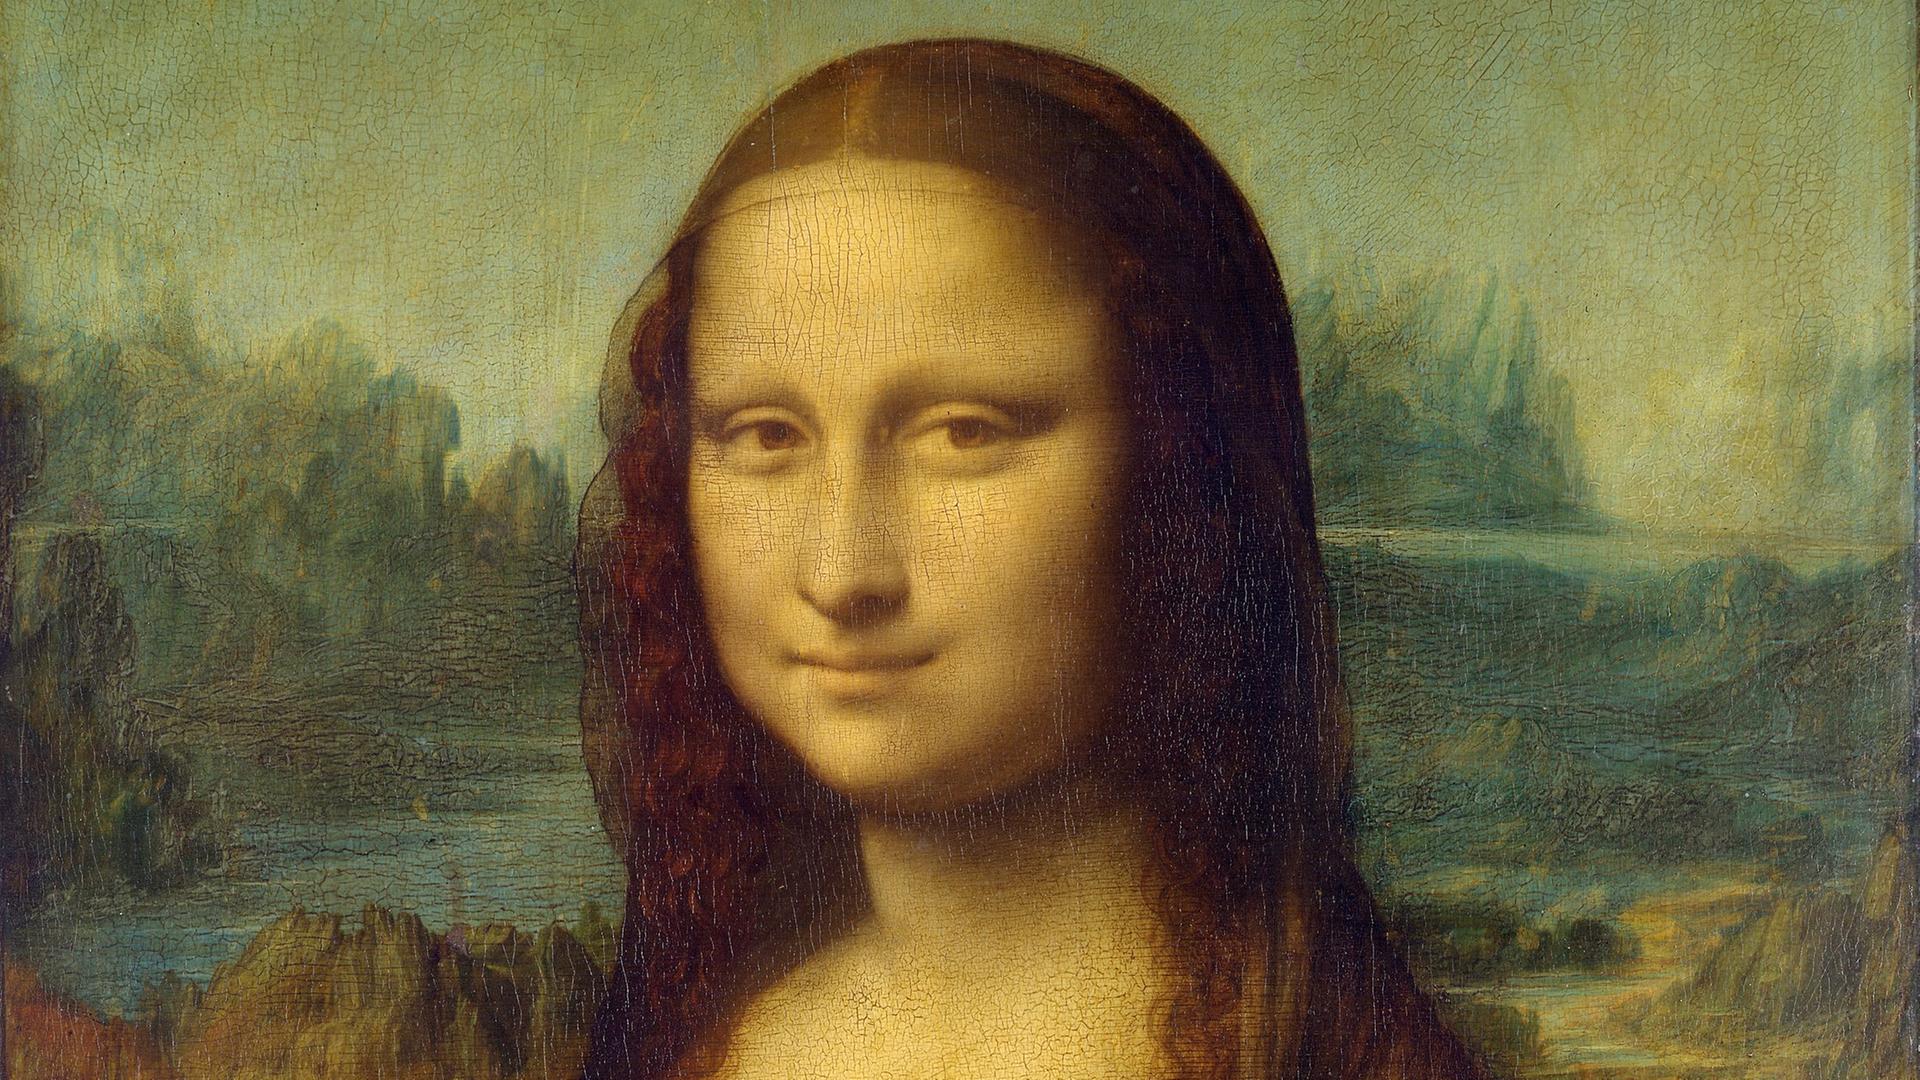 Eine Frau lächelt rätselhaft vor einer Landschaft mit See. Es ist die Mona Lisa von Leonardo da Vinci.